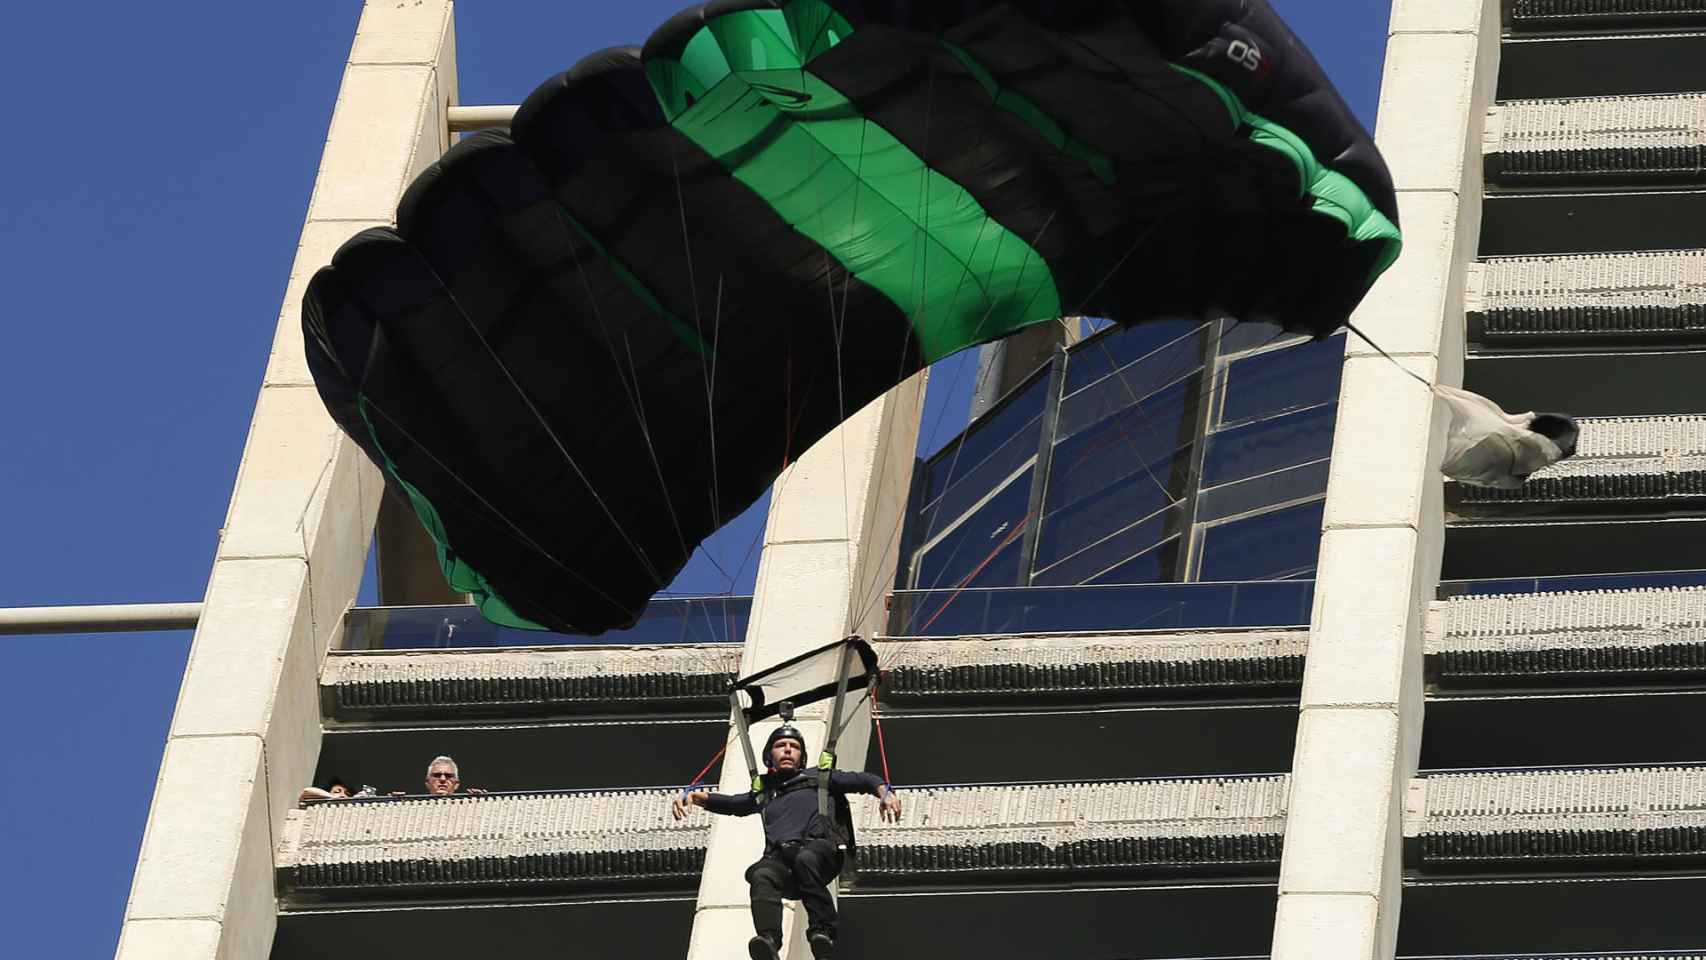 Uno de los participantes abre el paracaídas.